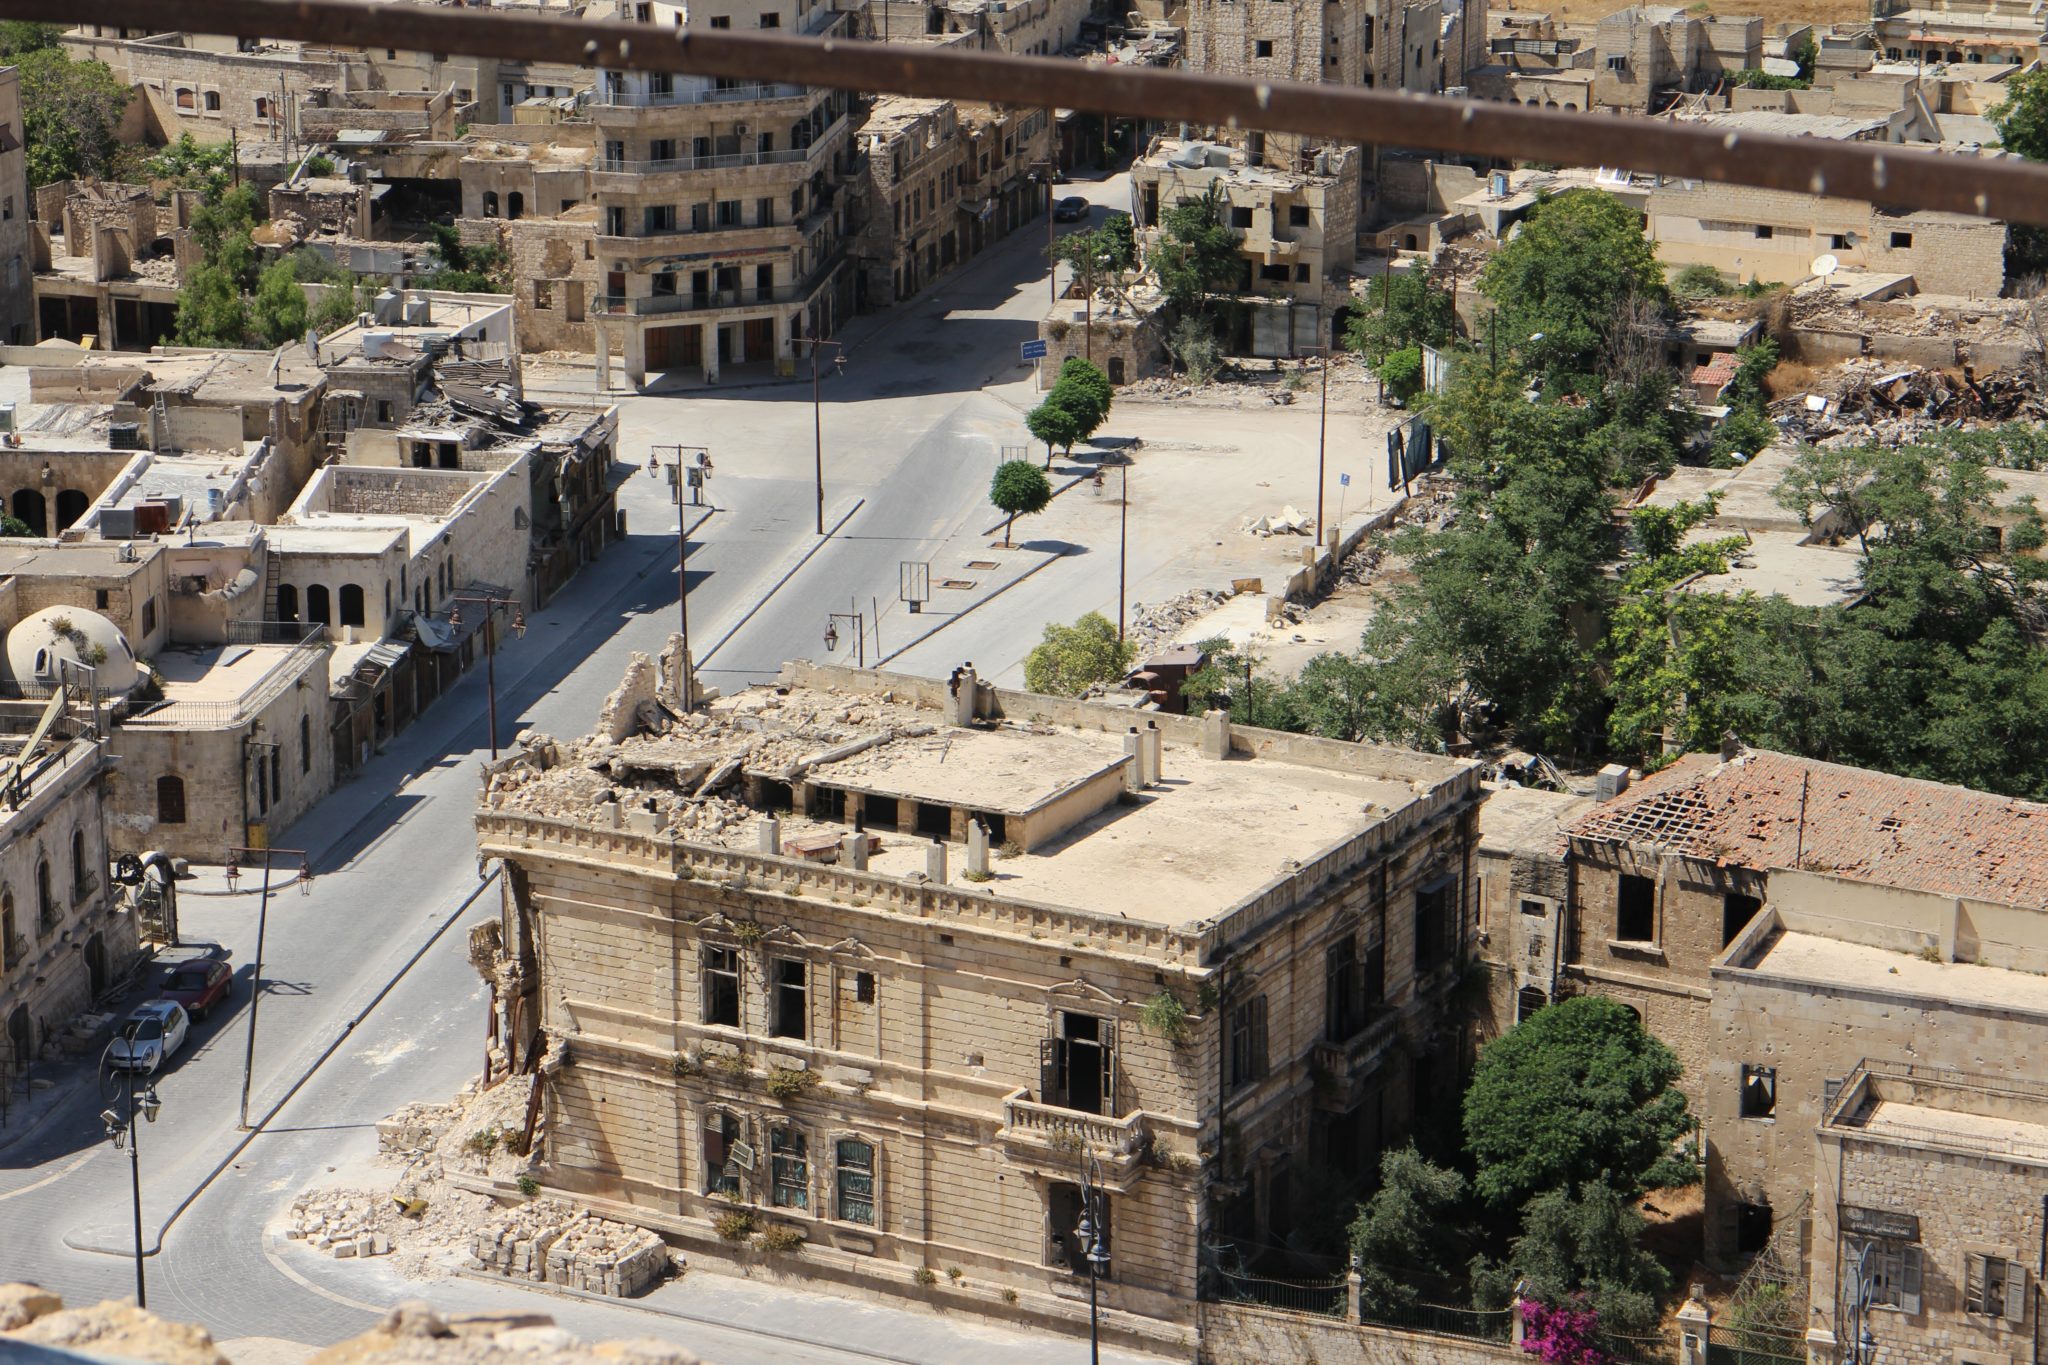 Concrete buildings in Aleppo, Syria